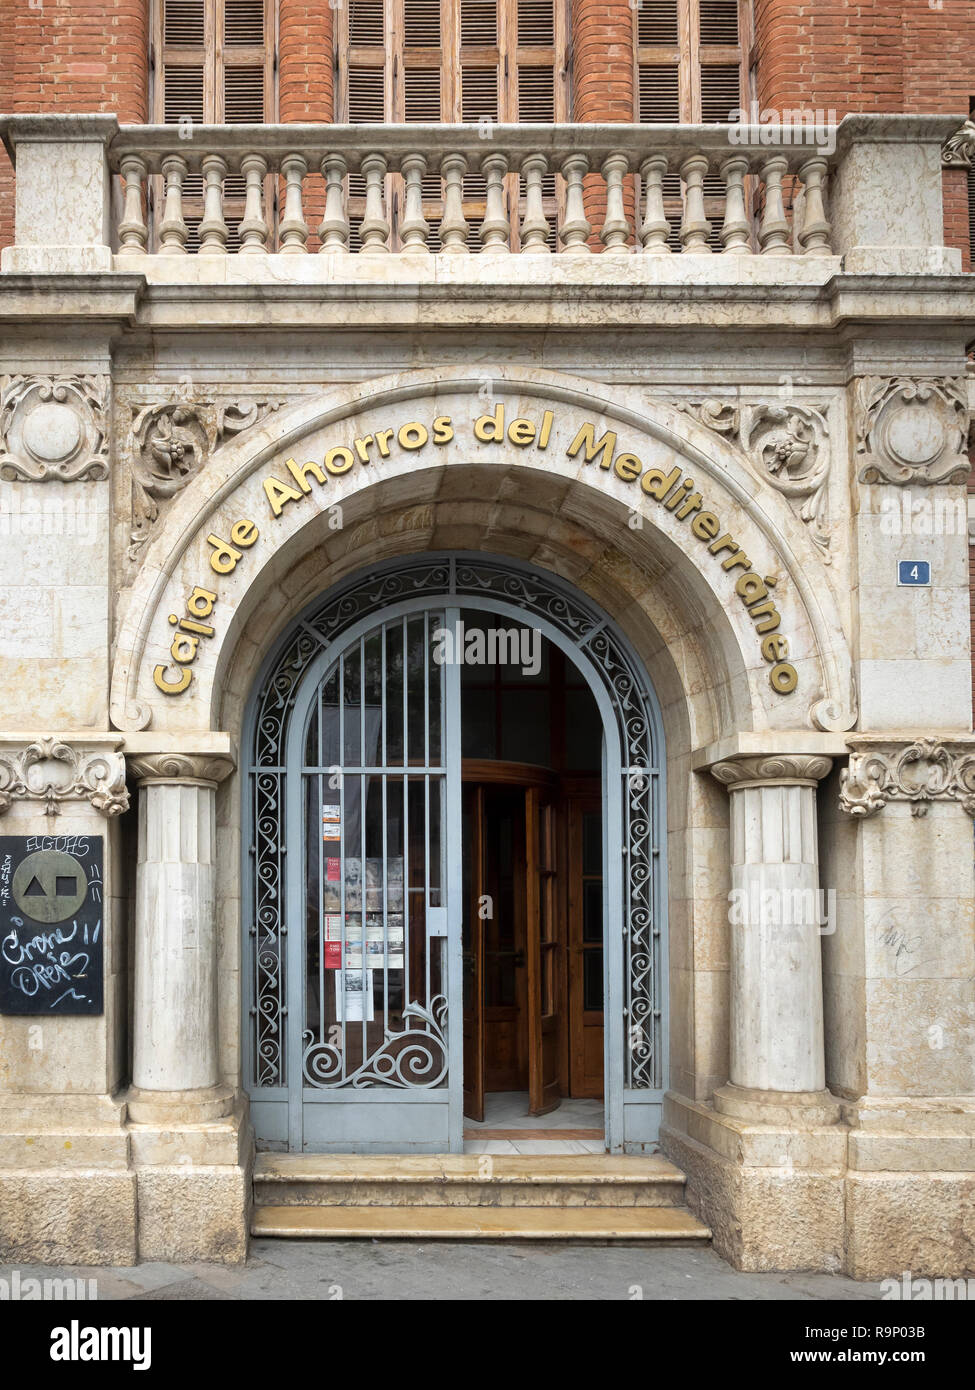 VALENCIA, SPAIN:  Doorway with sign for Mediterranean Saving Bank (Caja De Ahorros Del Mediterraneo) Stock Photo